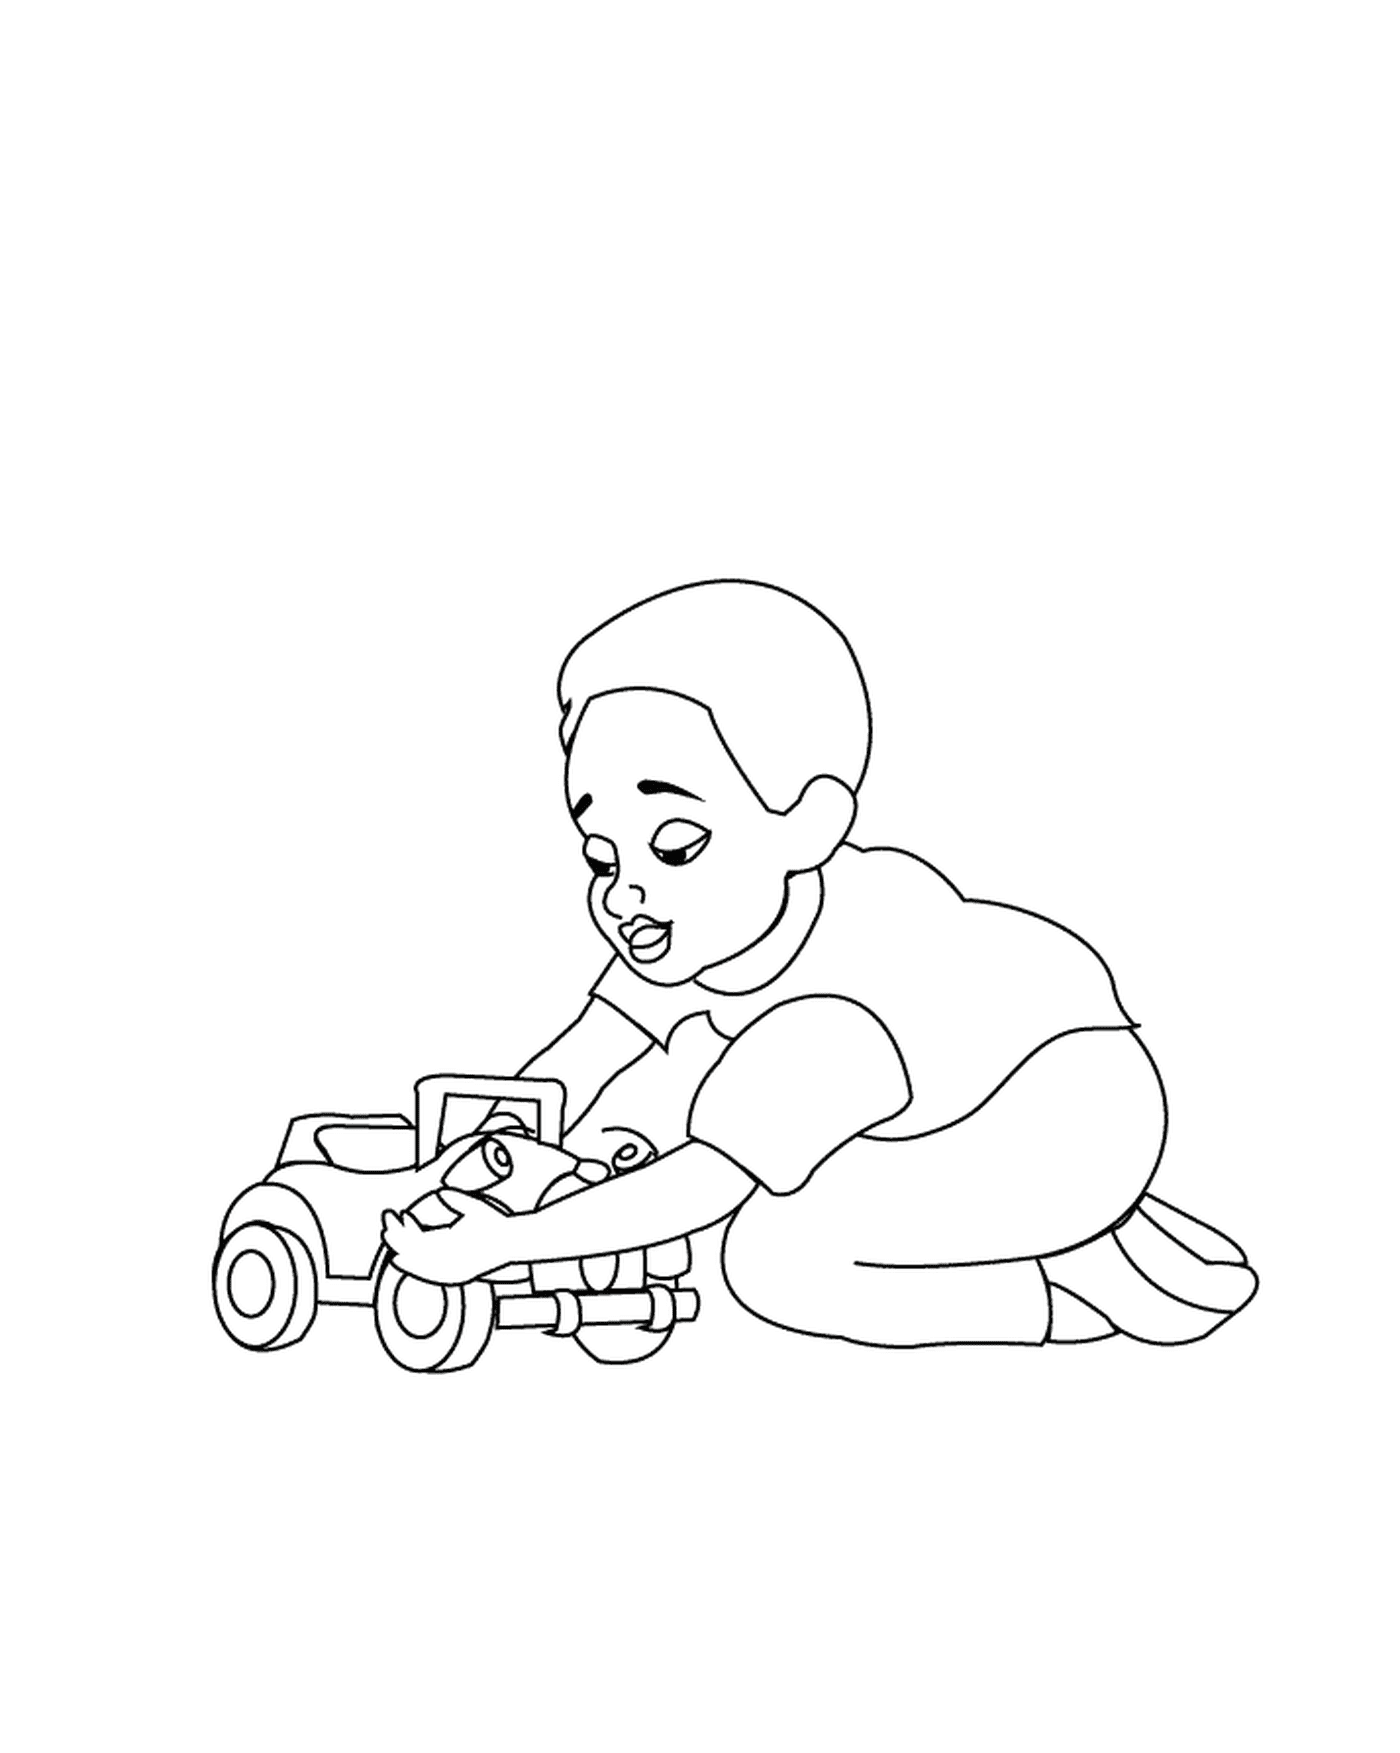  Un niño juega con un coche de juguete 